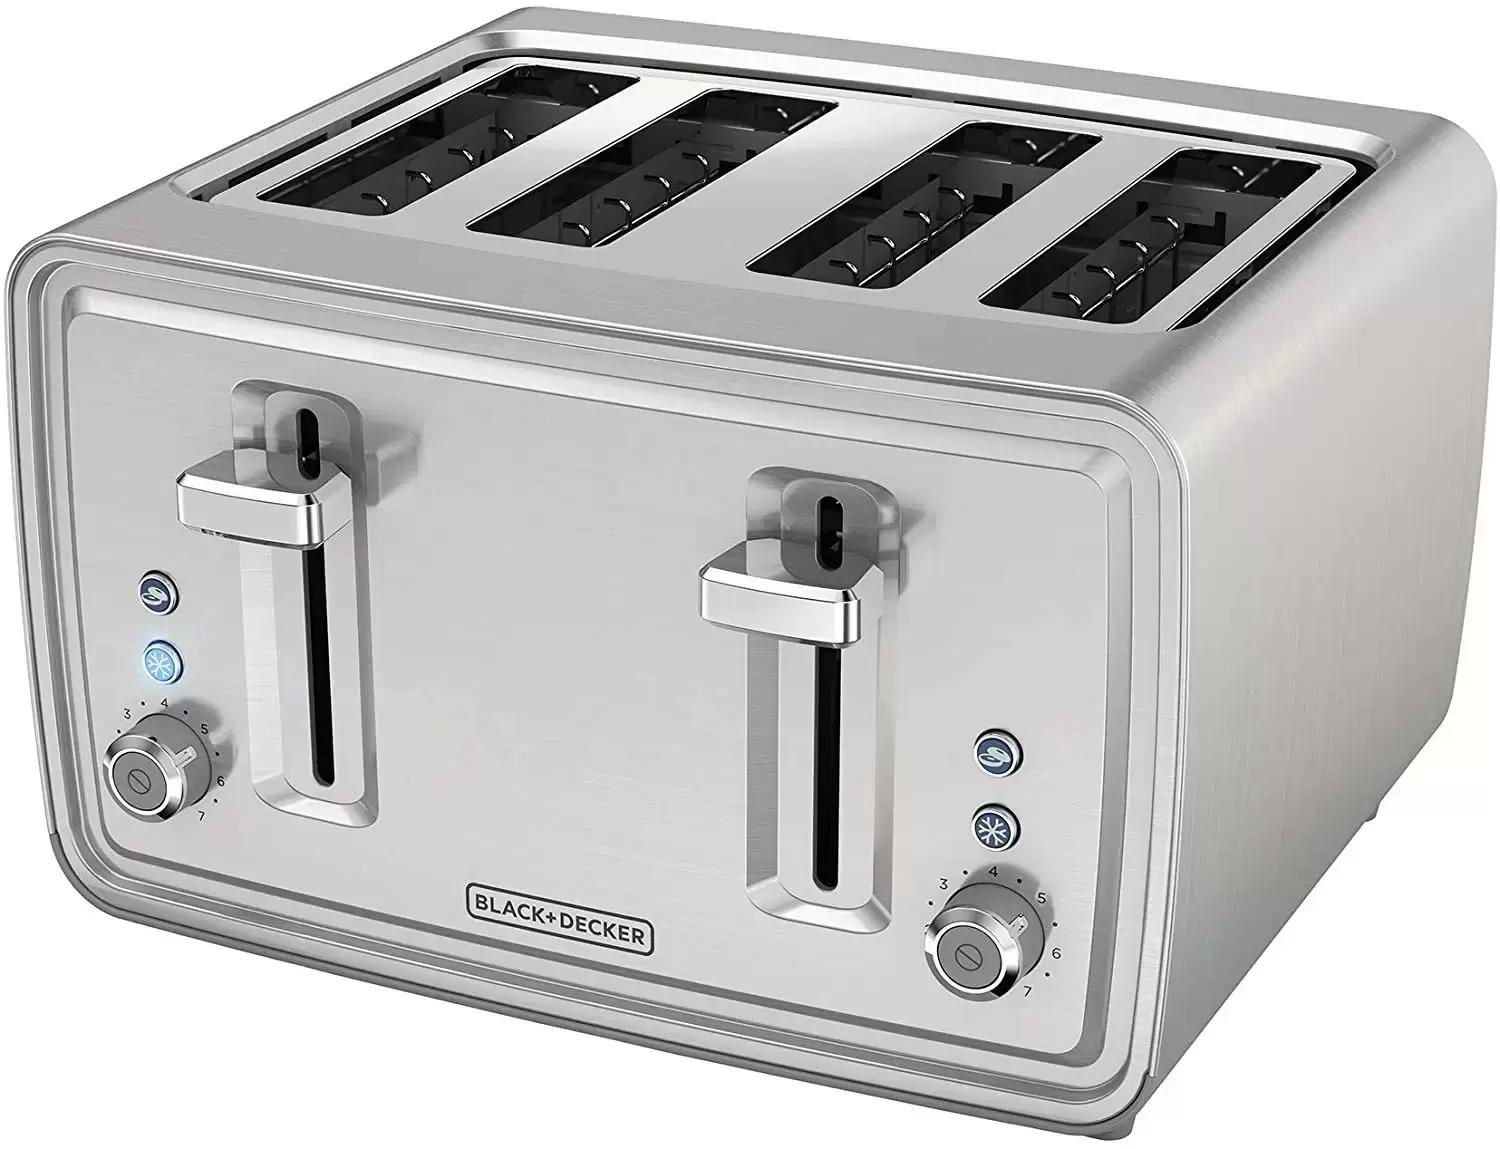 Black+Decker 4-Slice Stainless Steel Toaster for $24.99